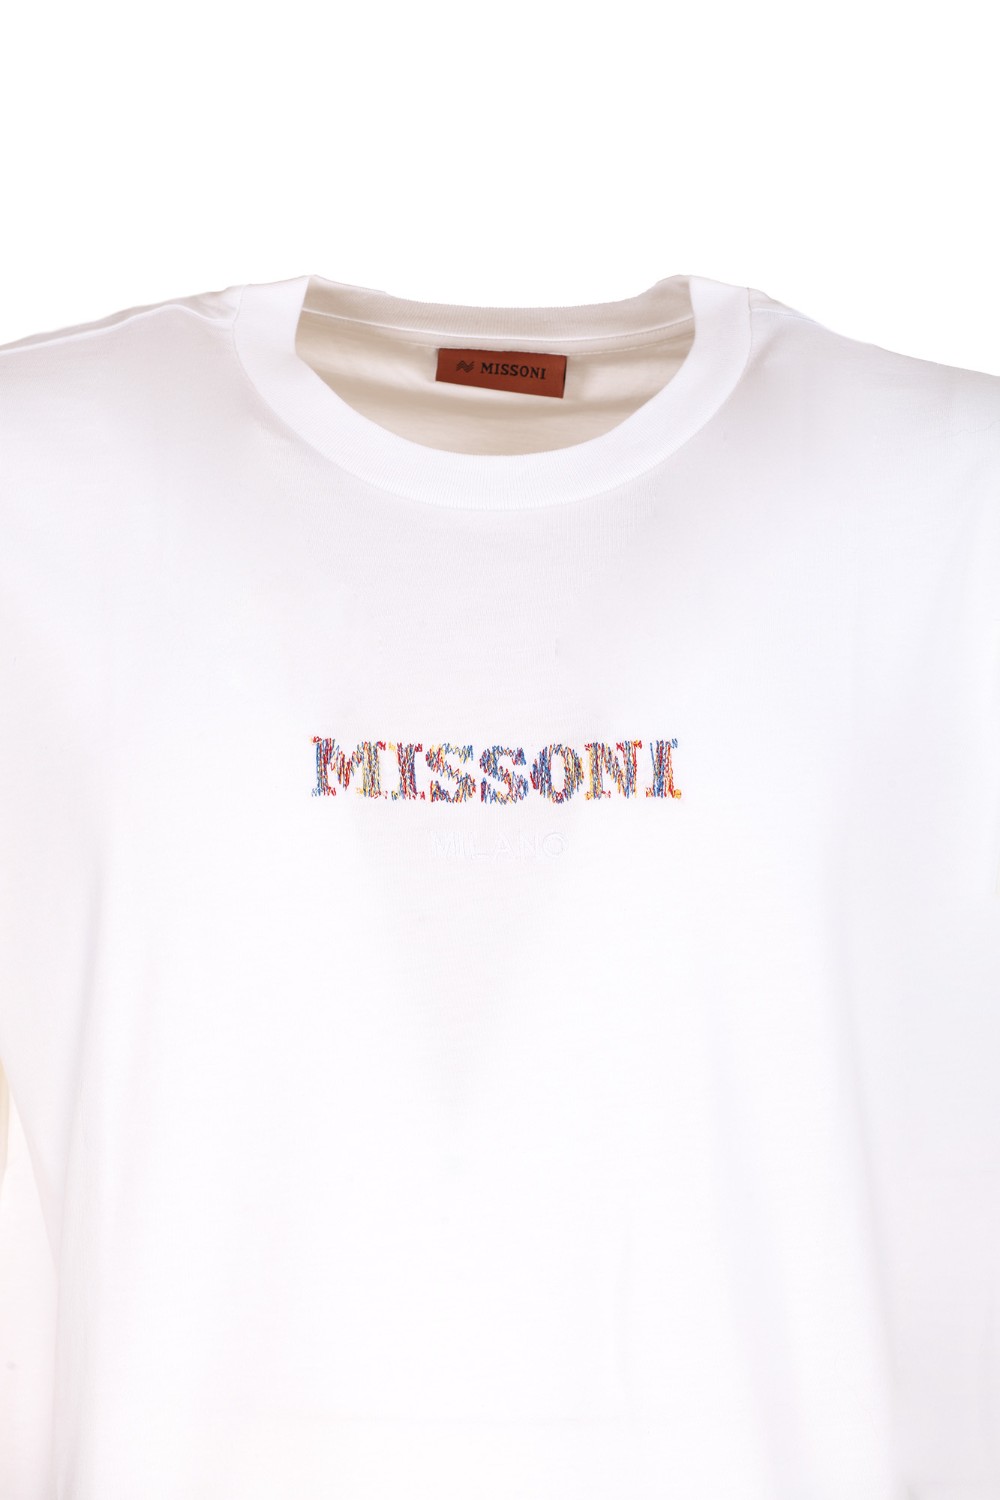 shop MISSONI Saldi T-shirt: Missoni T-shirt con logo.
Girocollo.
Maniche corte.
Vestibilità regolare.
Composizione: 100% cotone.
Fabbricato in Italia.. UC22SL03-S013U number 7870384